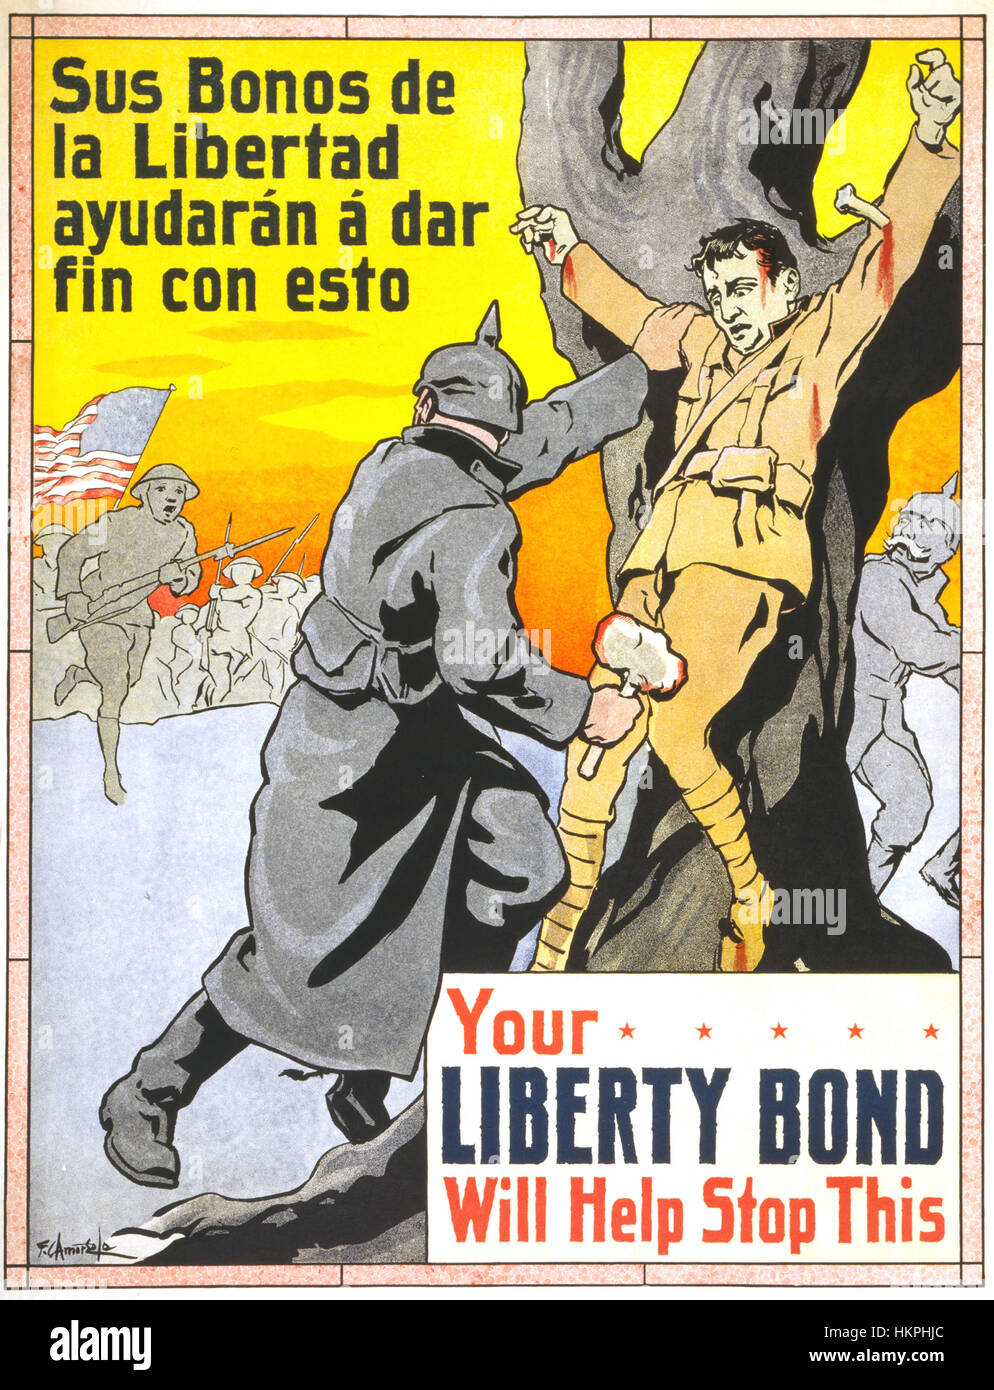 LIBERTY BOND 1917 American poster en espagnol et anglais la promotion de la vente d'obligations de la liberté comme l'avance pour arrêter les soldats Anmerican atrocités allemandes Banque D'Images